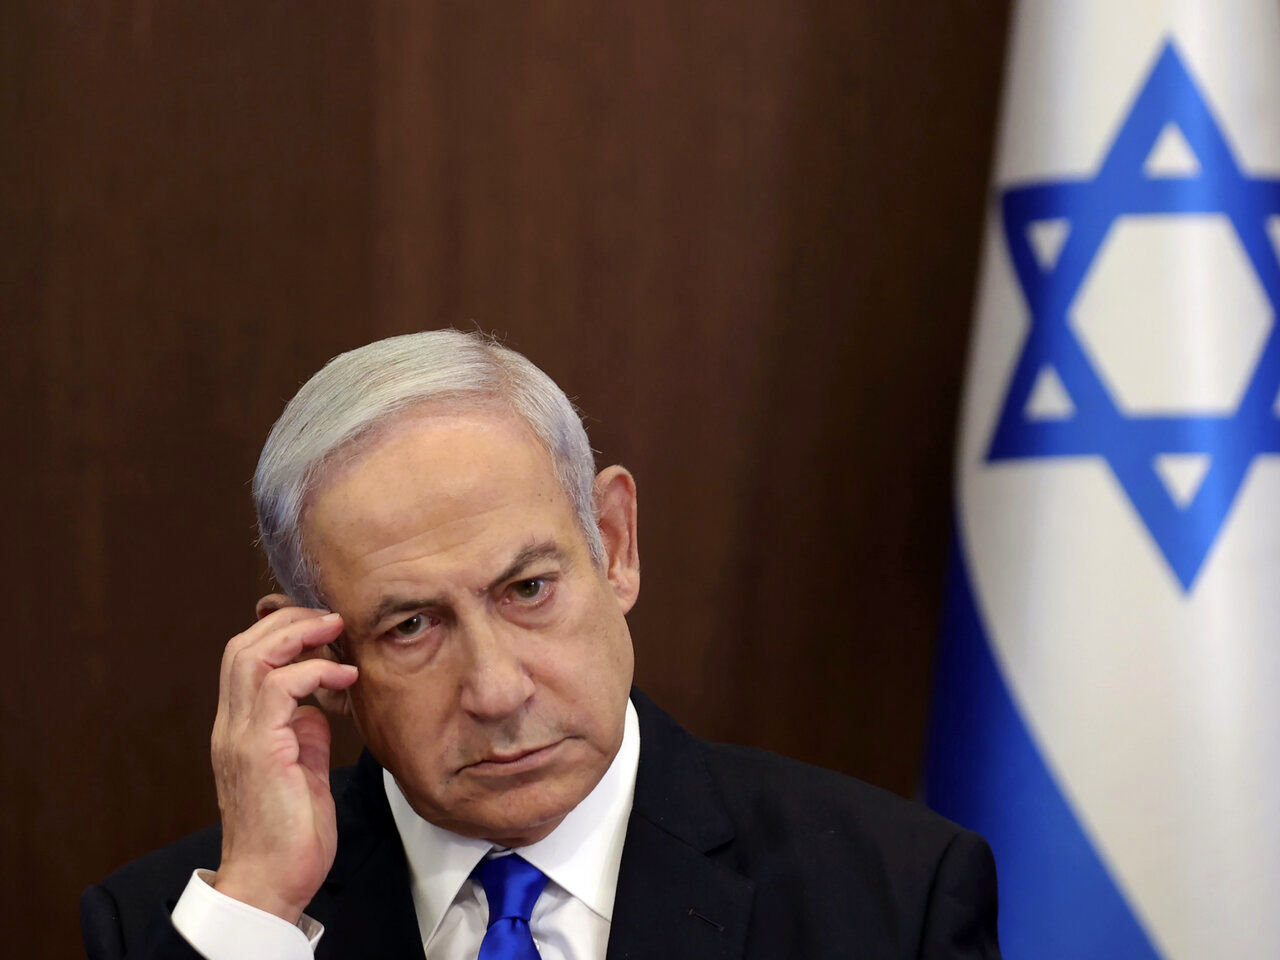 افسر سابق موساد نتانیاهو را مسئول شکست دانست/ او باید استعفا دهد